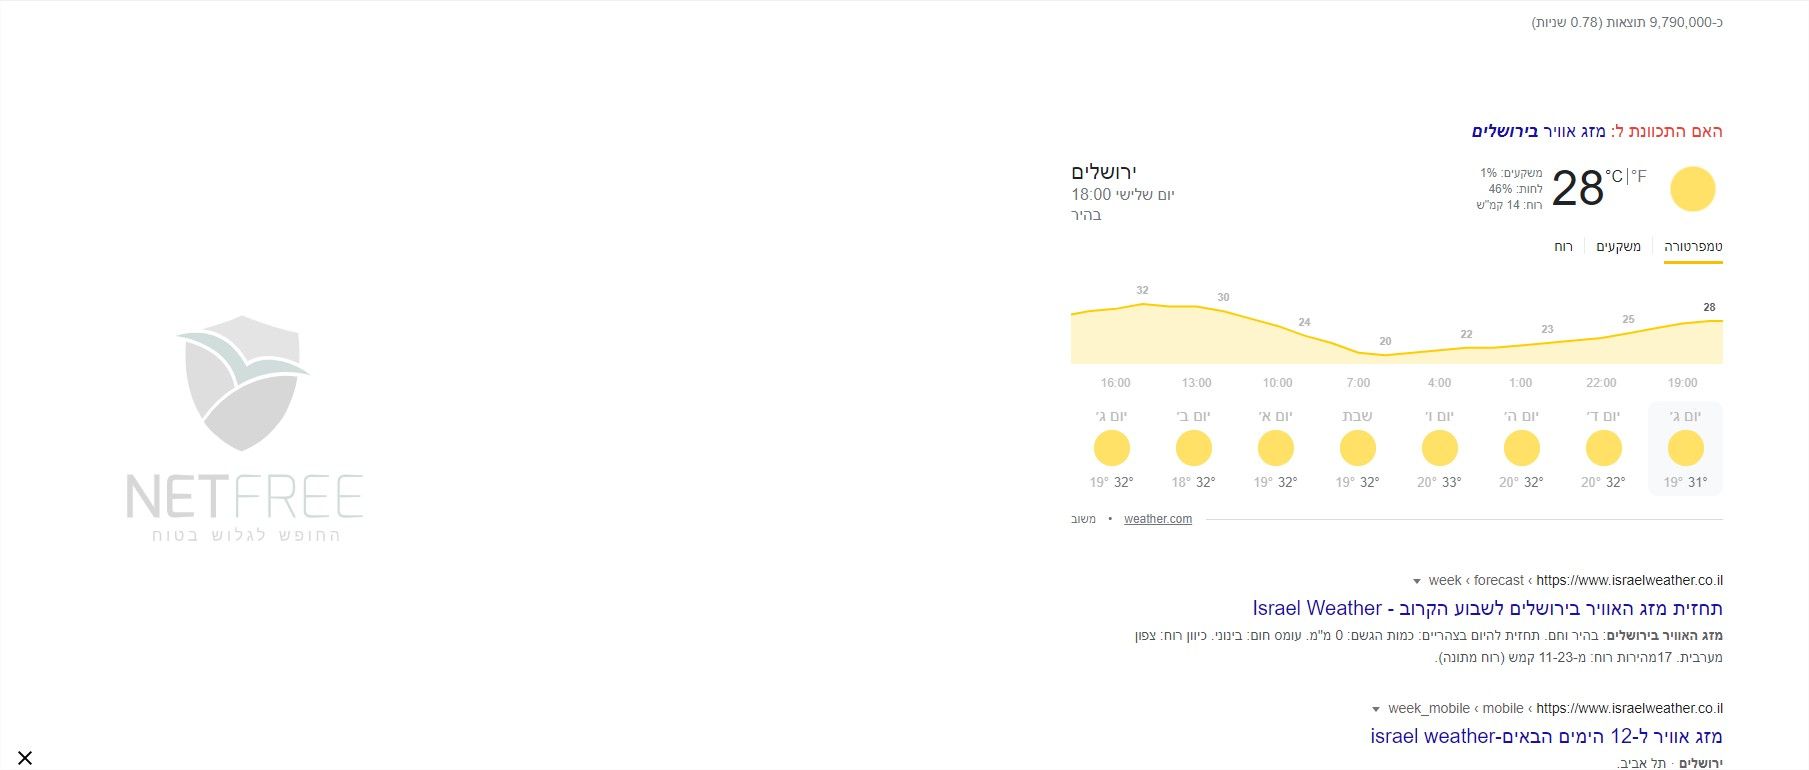 מזג אוויר ירושלים - חיפוש ב-Google - Google Chrome.jpg